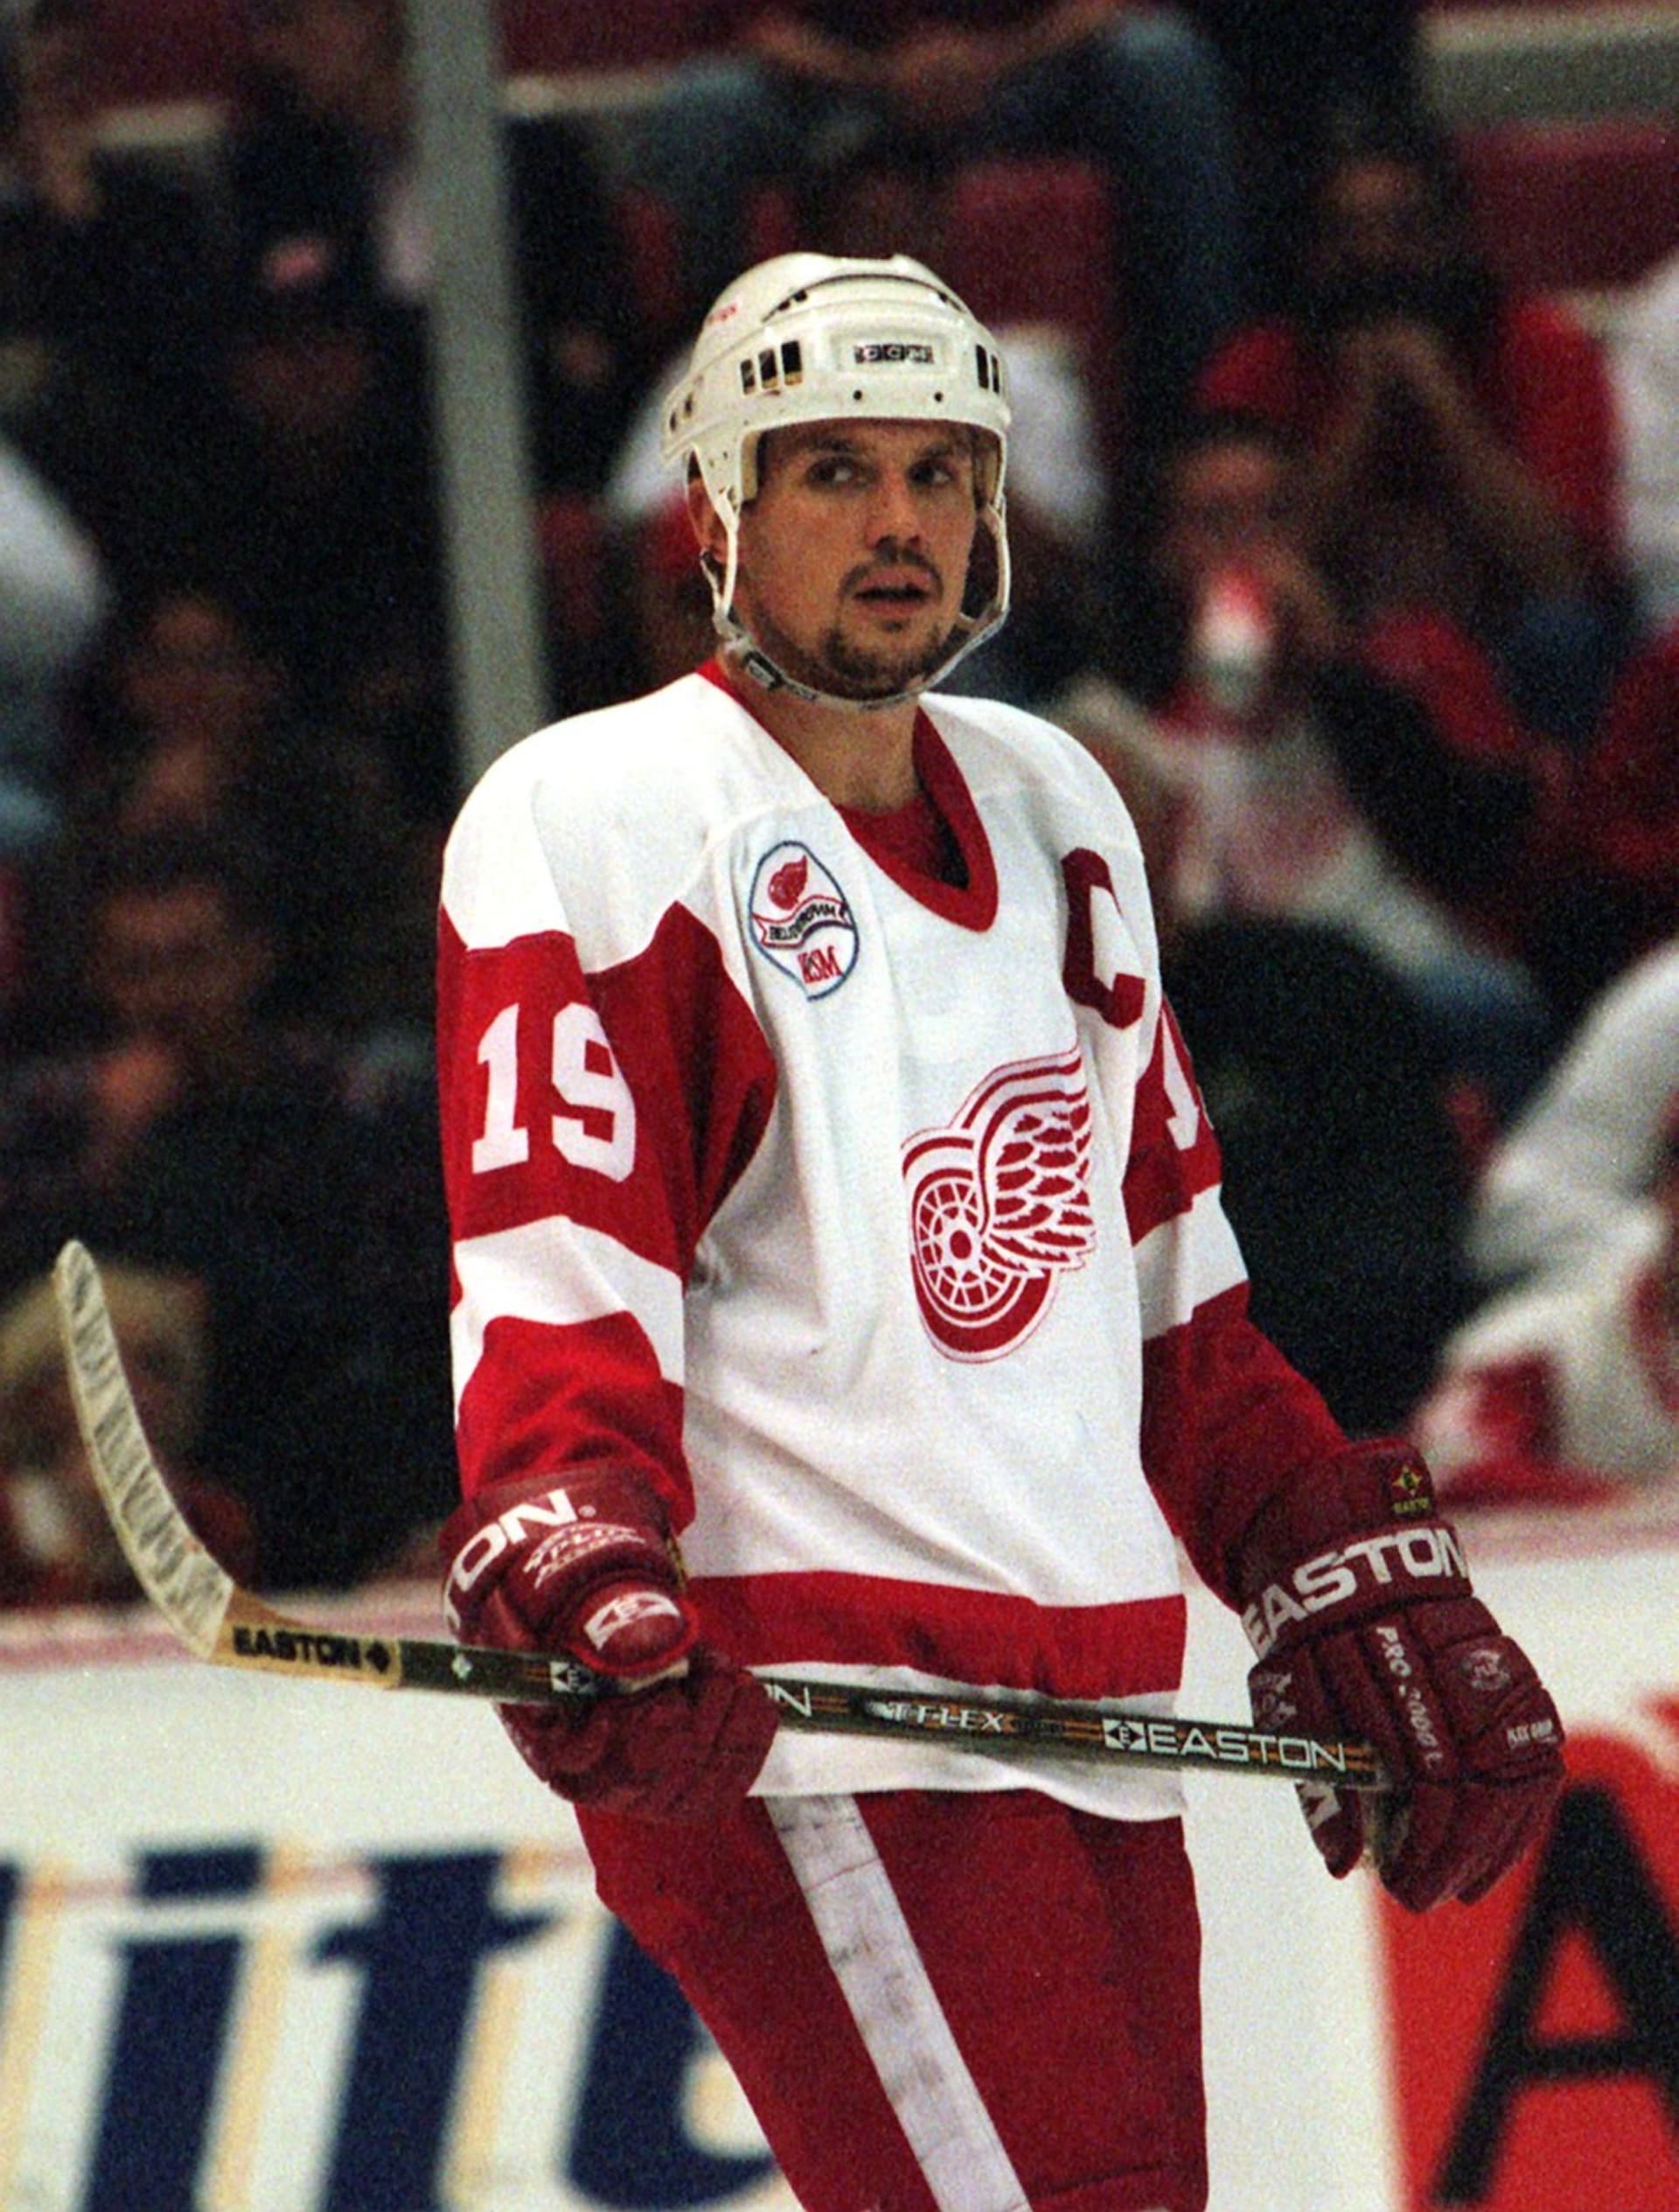 Steve Yzerman na snímku z roku 1997, kdy byl kapitánem mužstva NHL Detroit Red Wings.